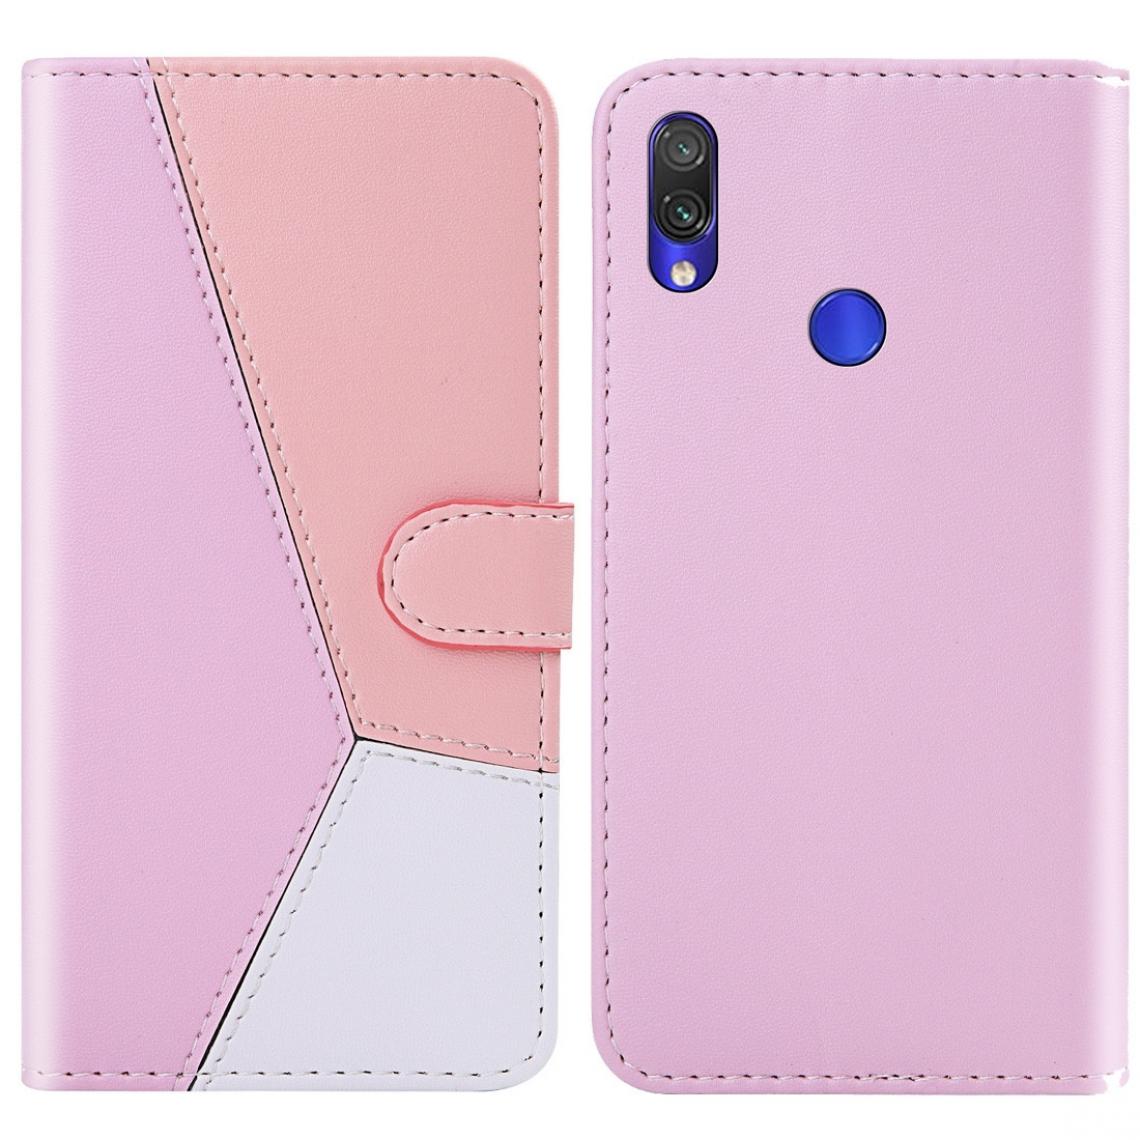 Wewoo - Housse Coque Pour Xiaomi Redmi 7 tricolore couture horizontale Flip TPU + PU étui en cuir avec titulaire et fentes cartes et portefeuille rose - Coque, étui smartphone